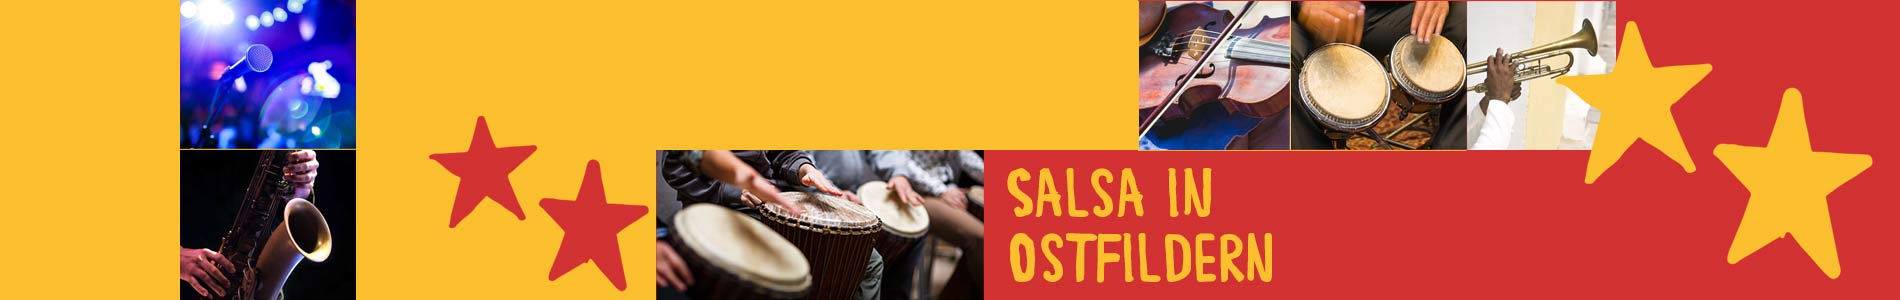 Salsa in Ostfildern – Salsa lernen und tanzen, Tanzkurse, Partys, Veranstaltungen